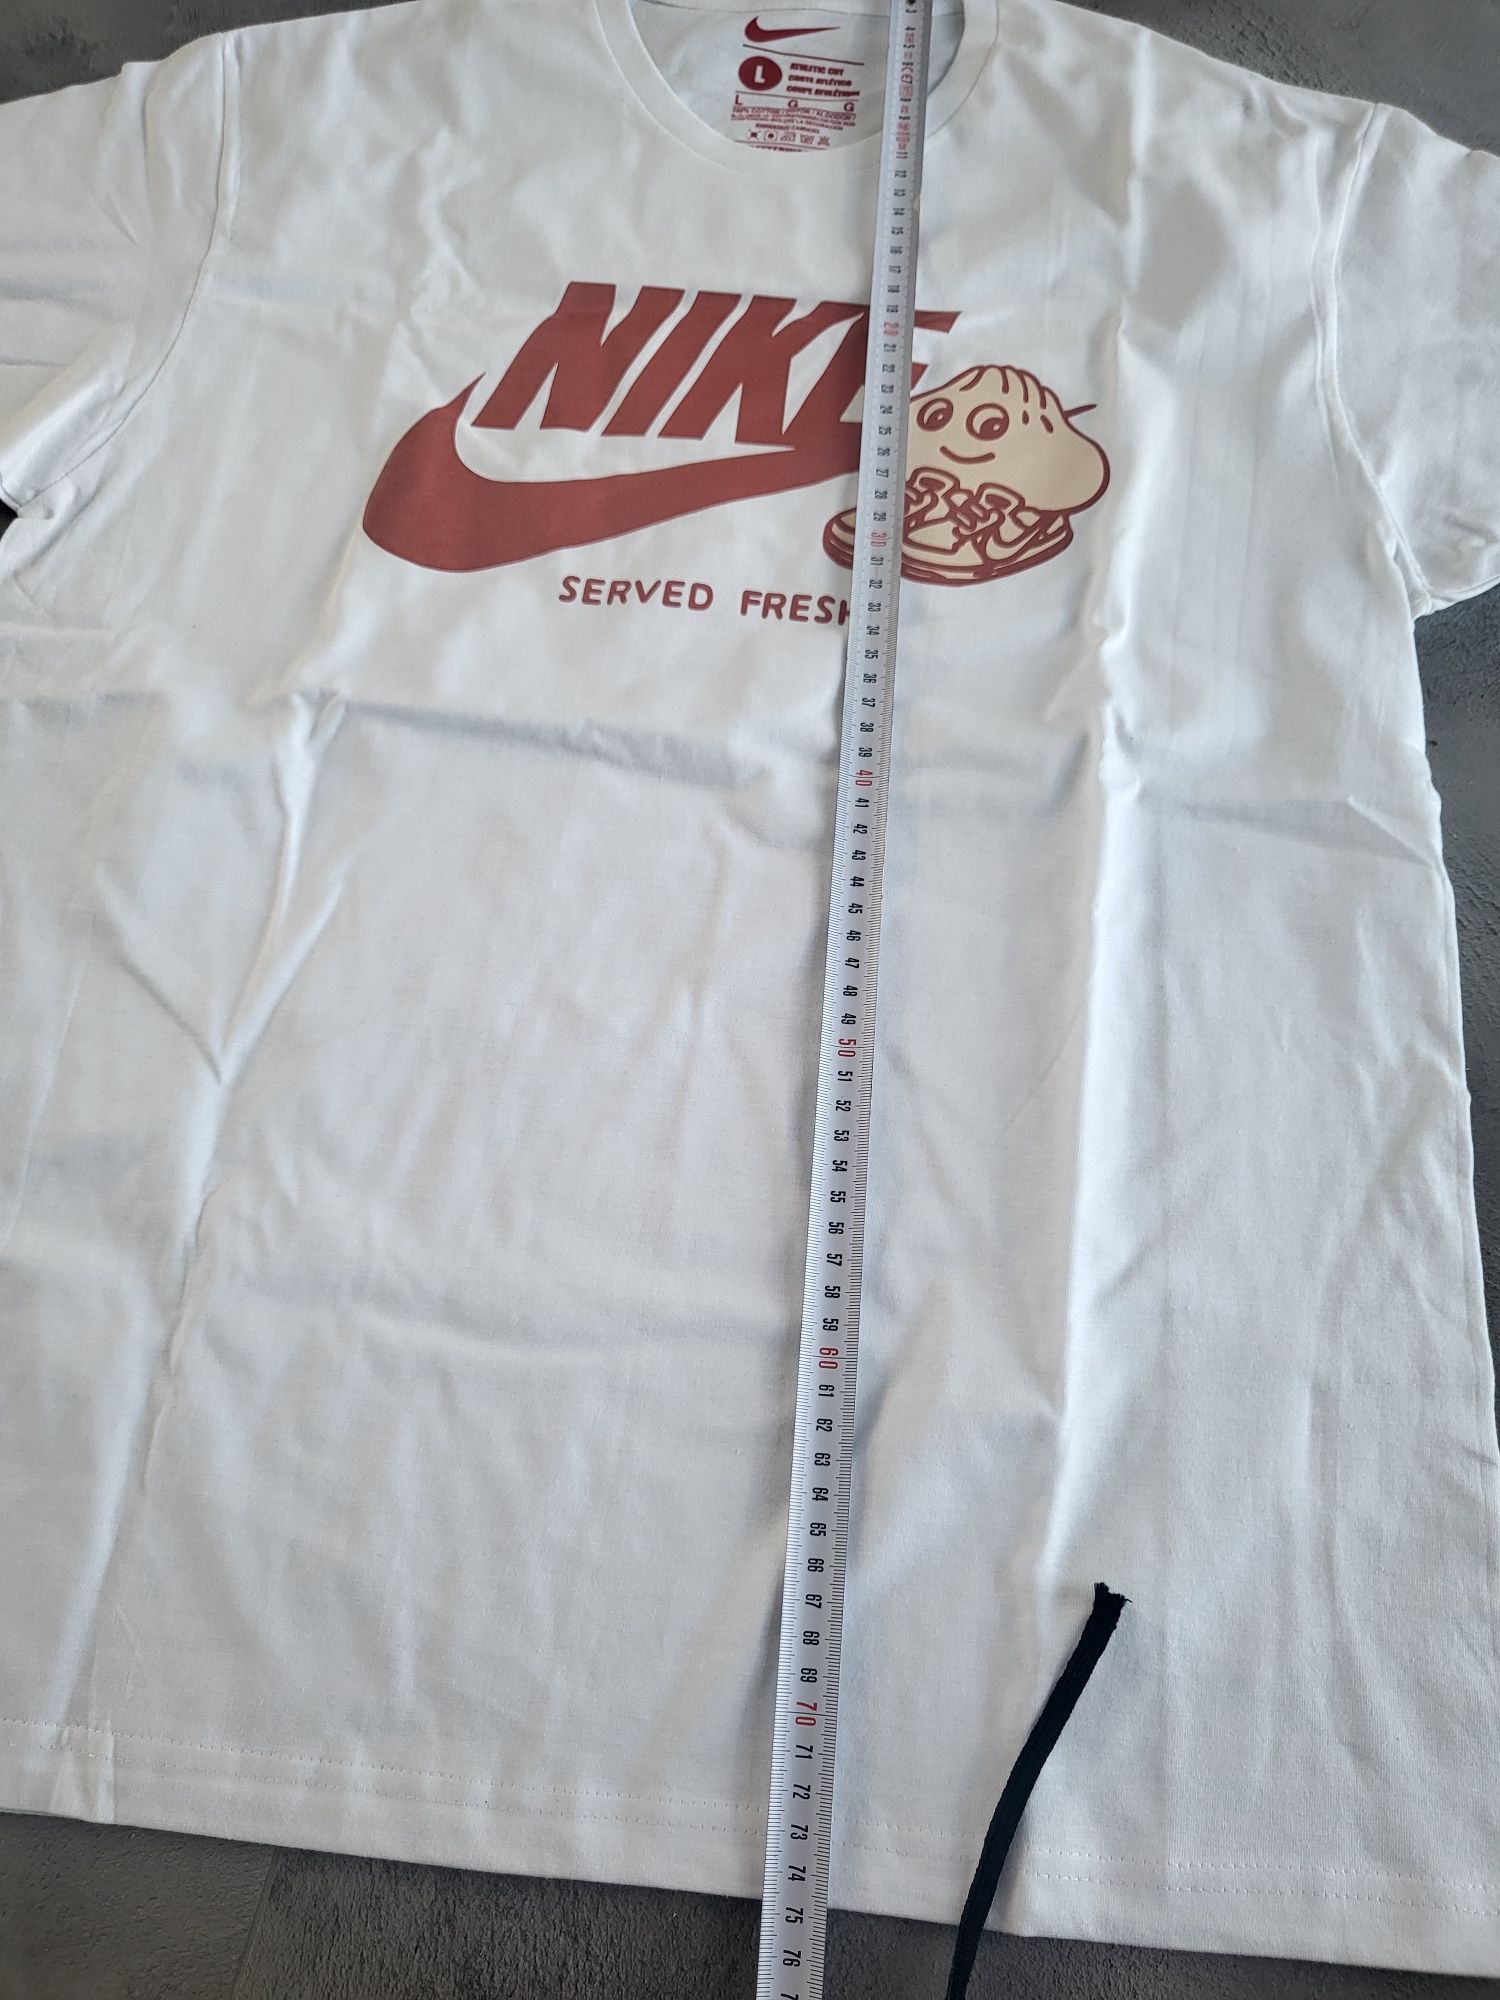 Nike biala koszulka męska rozmiar L nowa oryginalna